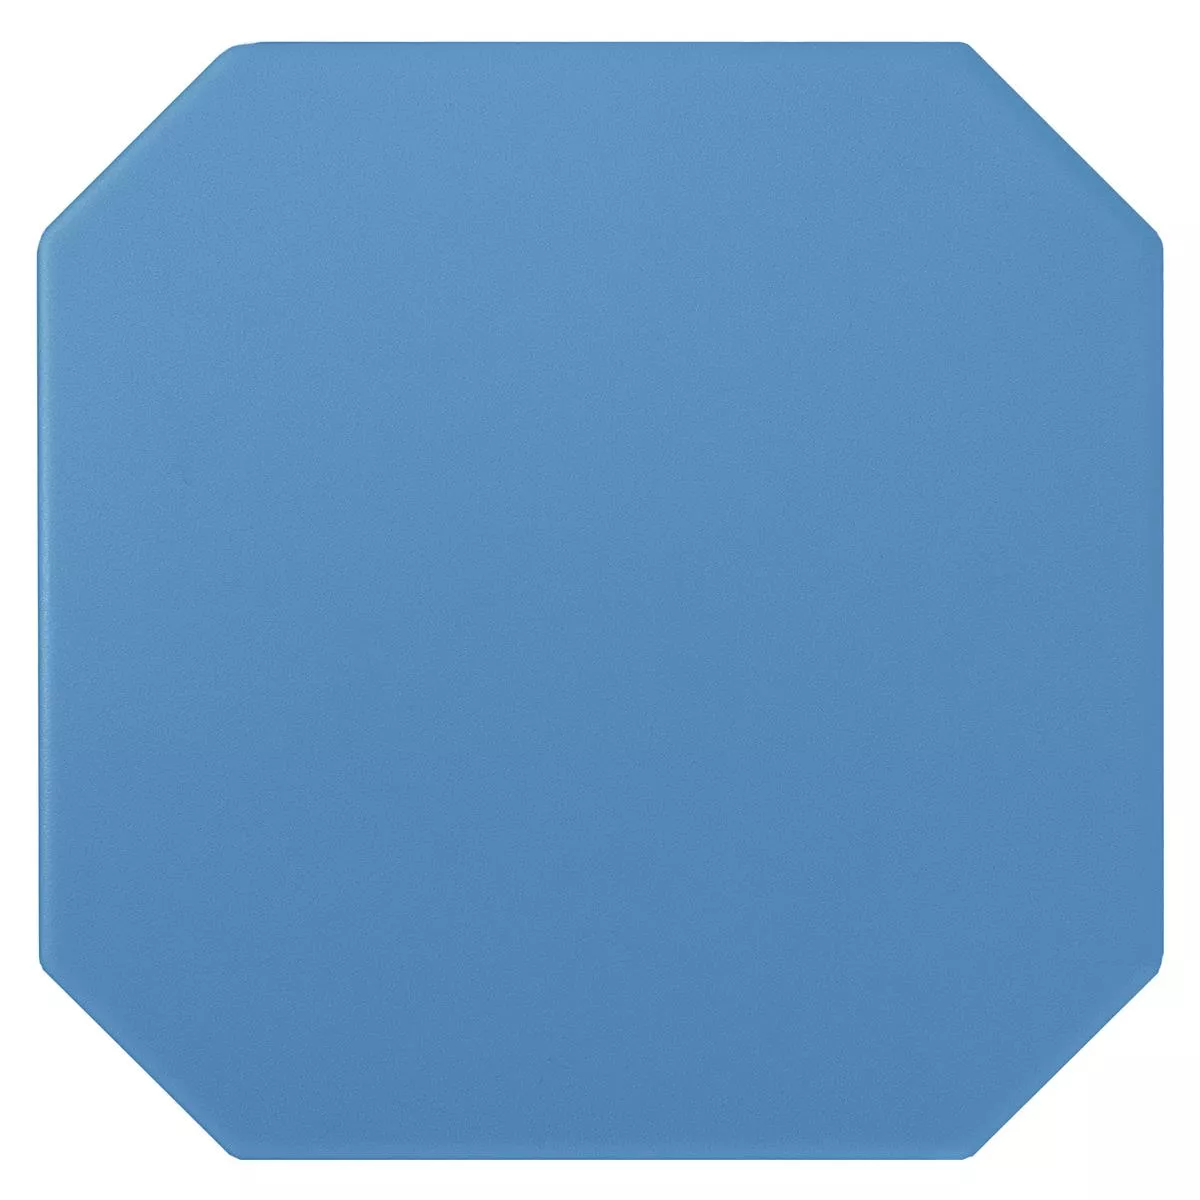 Posliinikivitavarat Laatat Genexia Uni Sininen Kahdeksankulmio 20x20cm